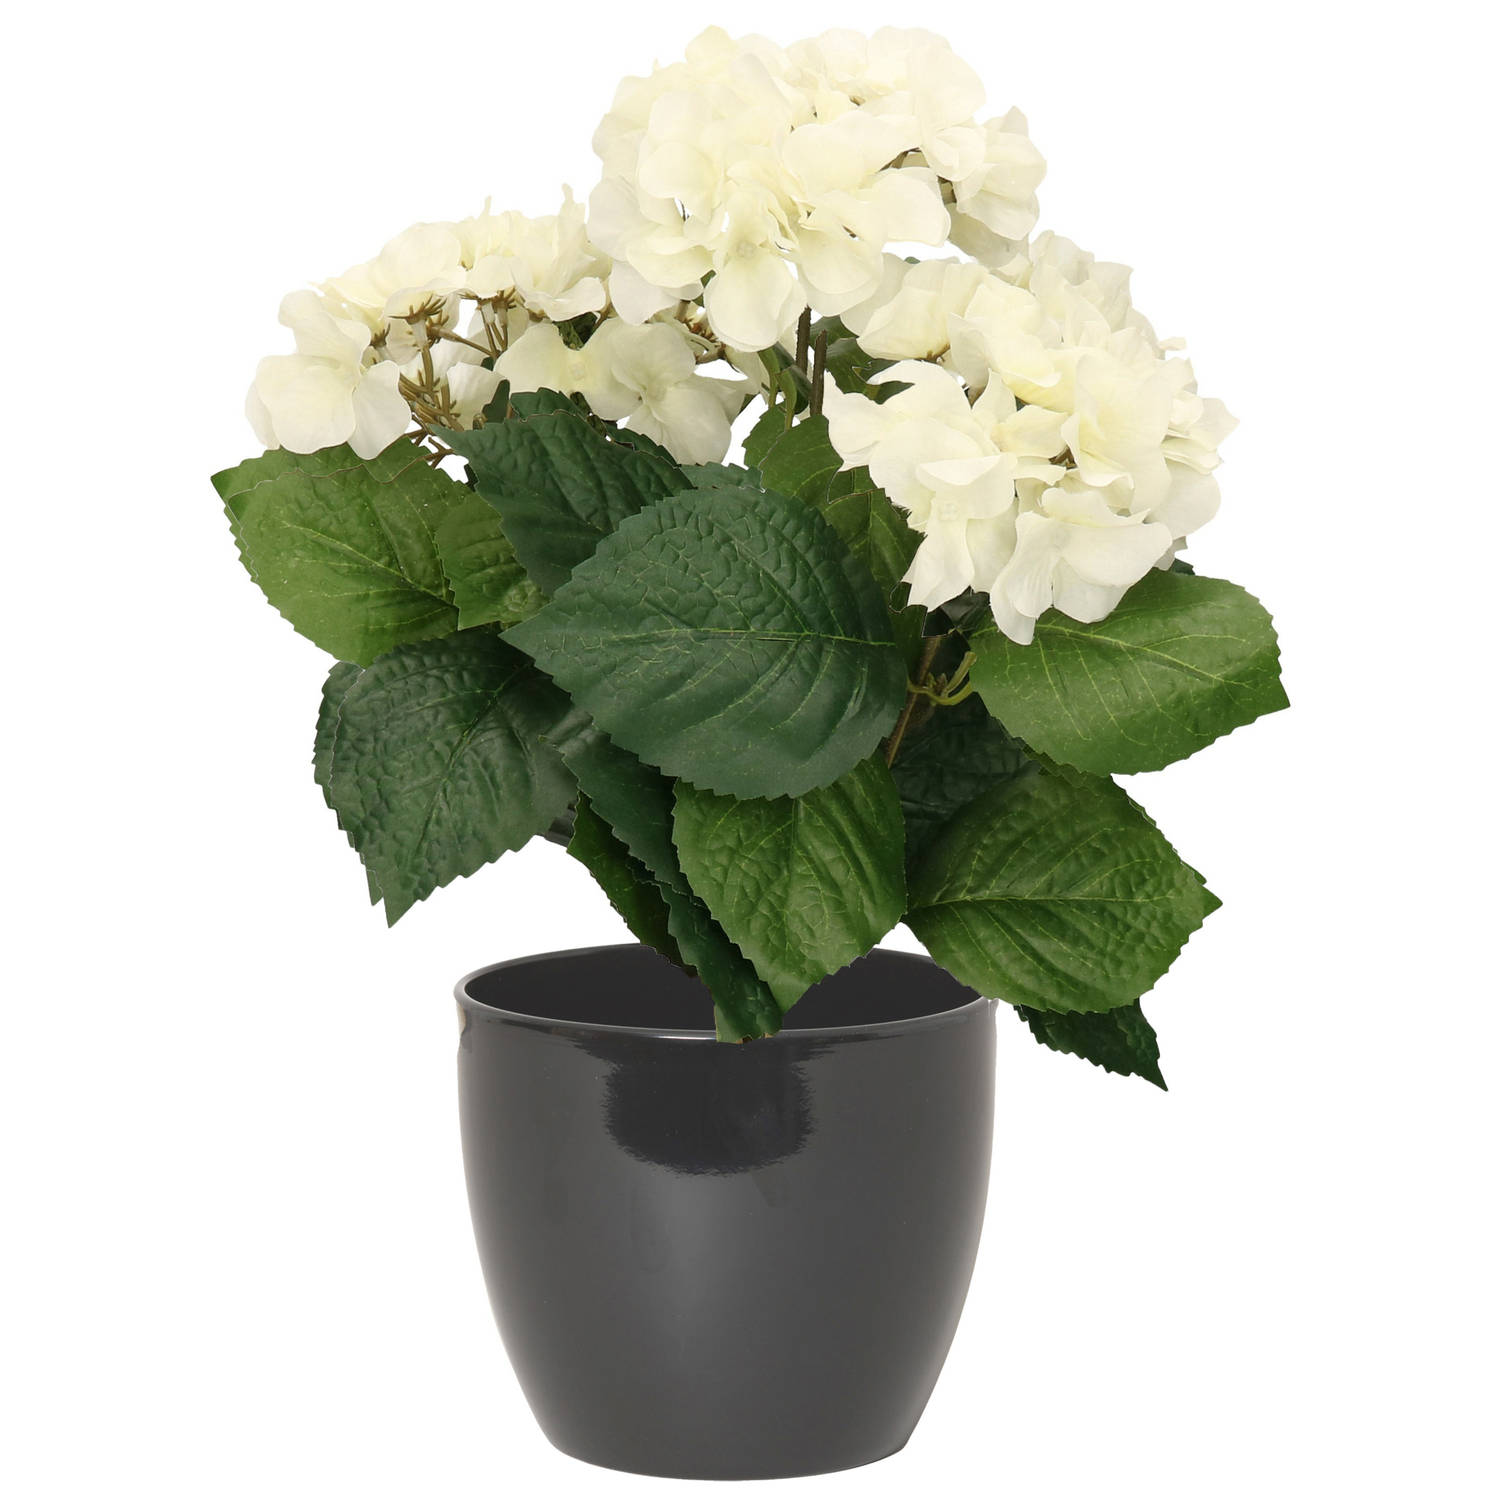 Hortensia kunstplant met bloemen wit in pot antraciet grijs 40 cm hoog Kunstplanten